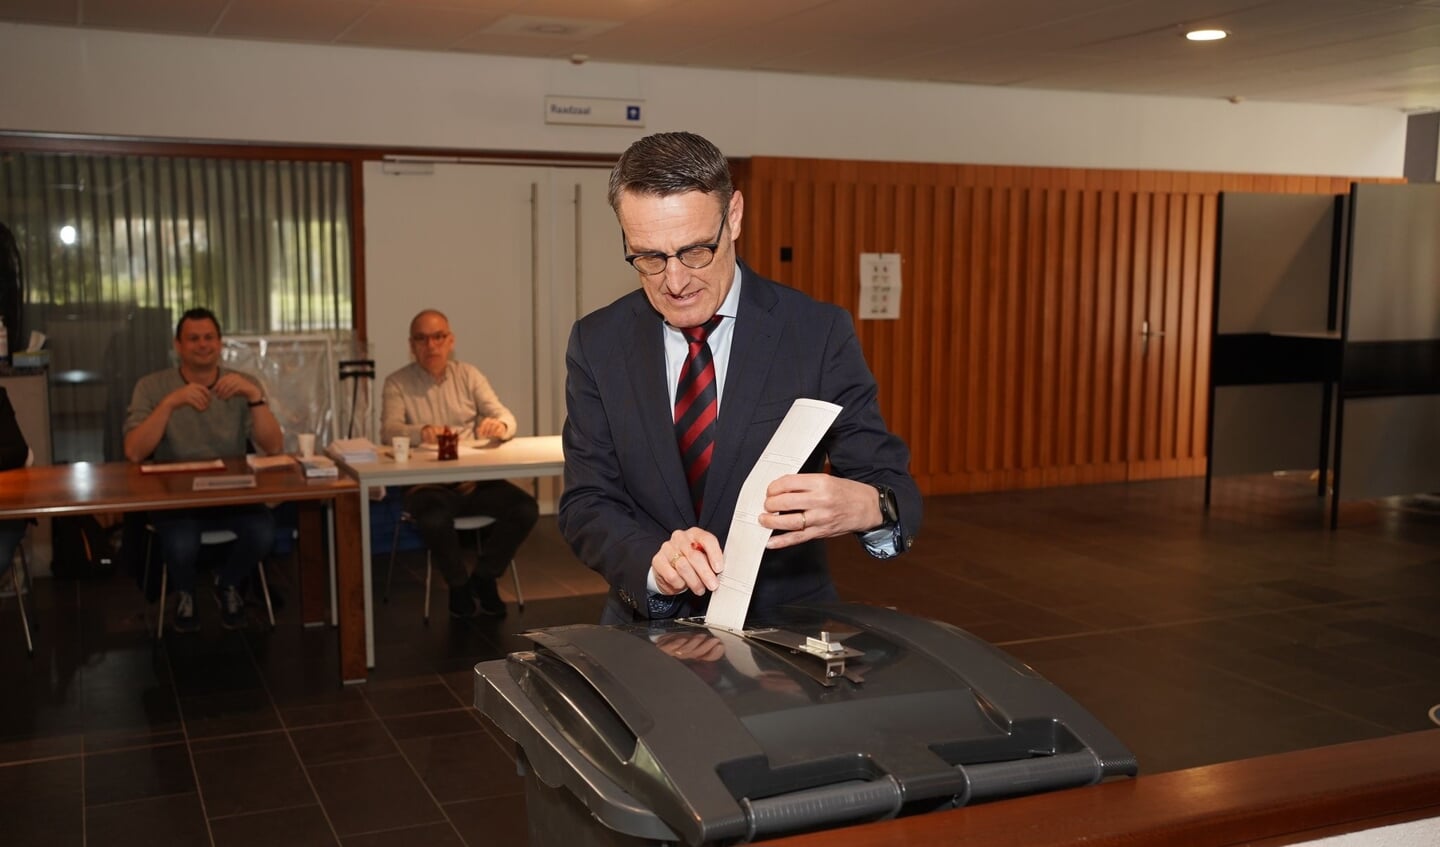 Burgemeester Van der Meijden brengt zijn stem uit